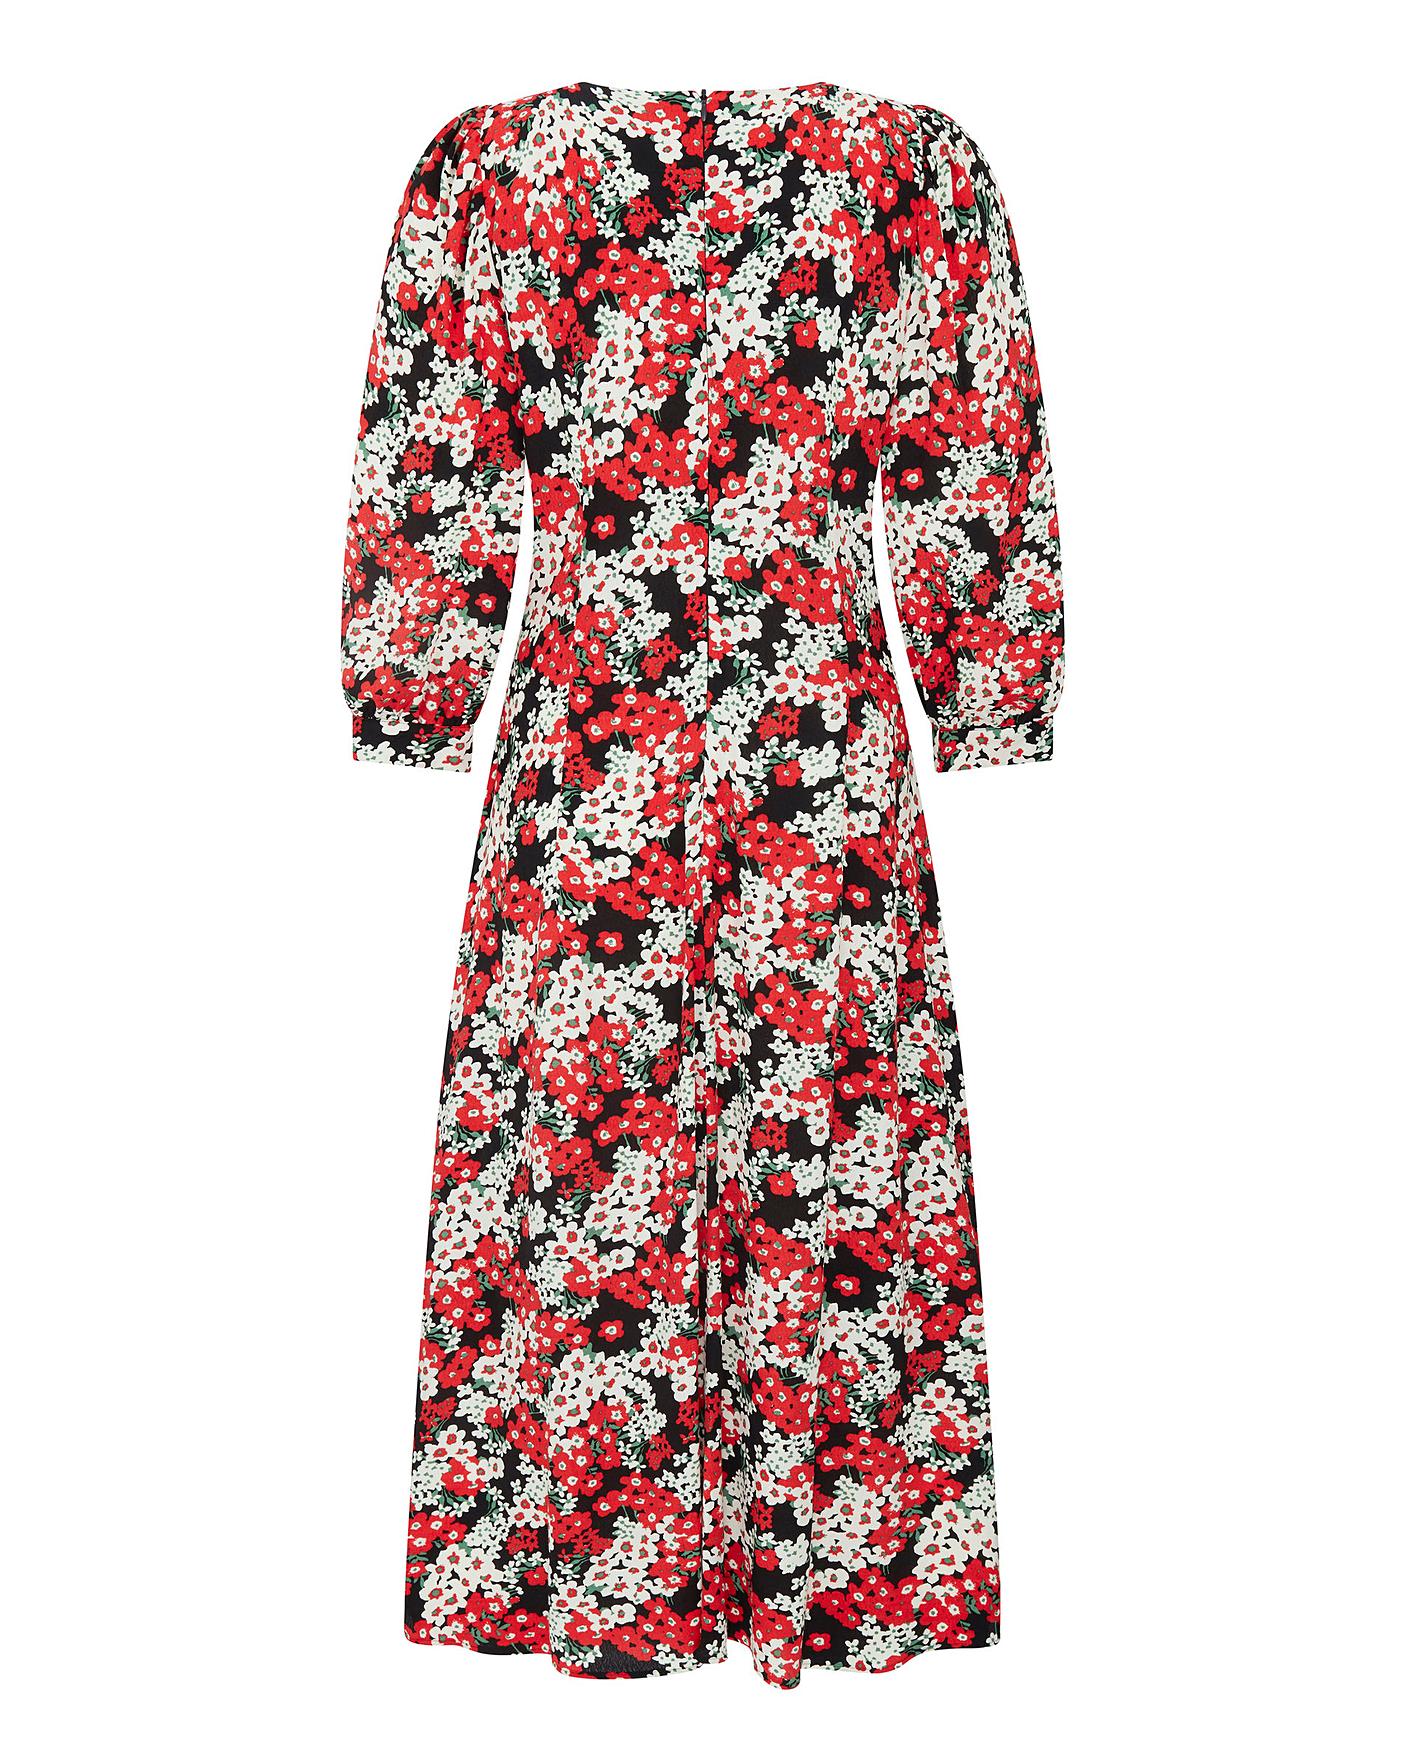 Finery London Millia Floral Dress | J D Williams